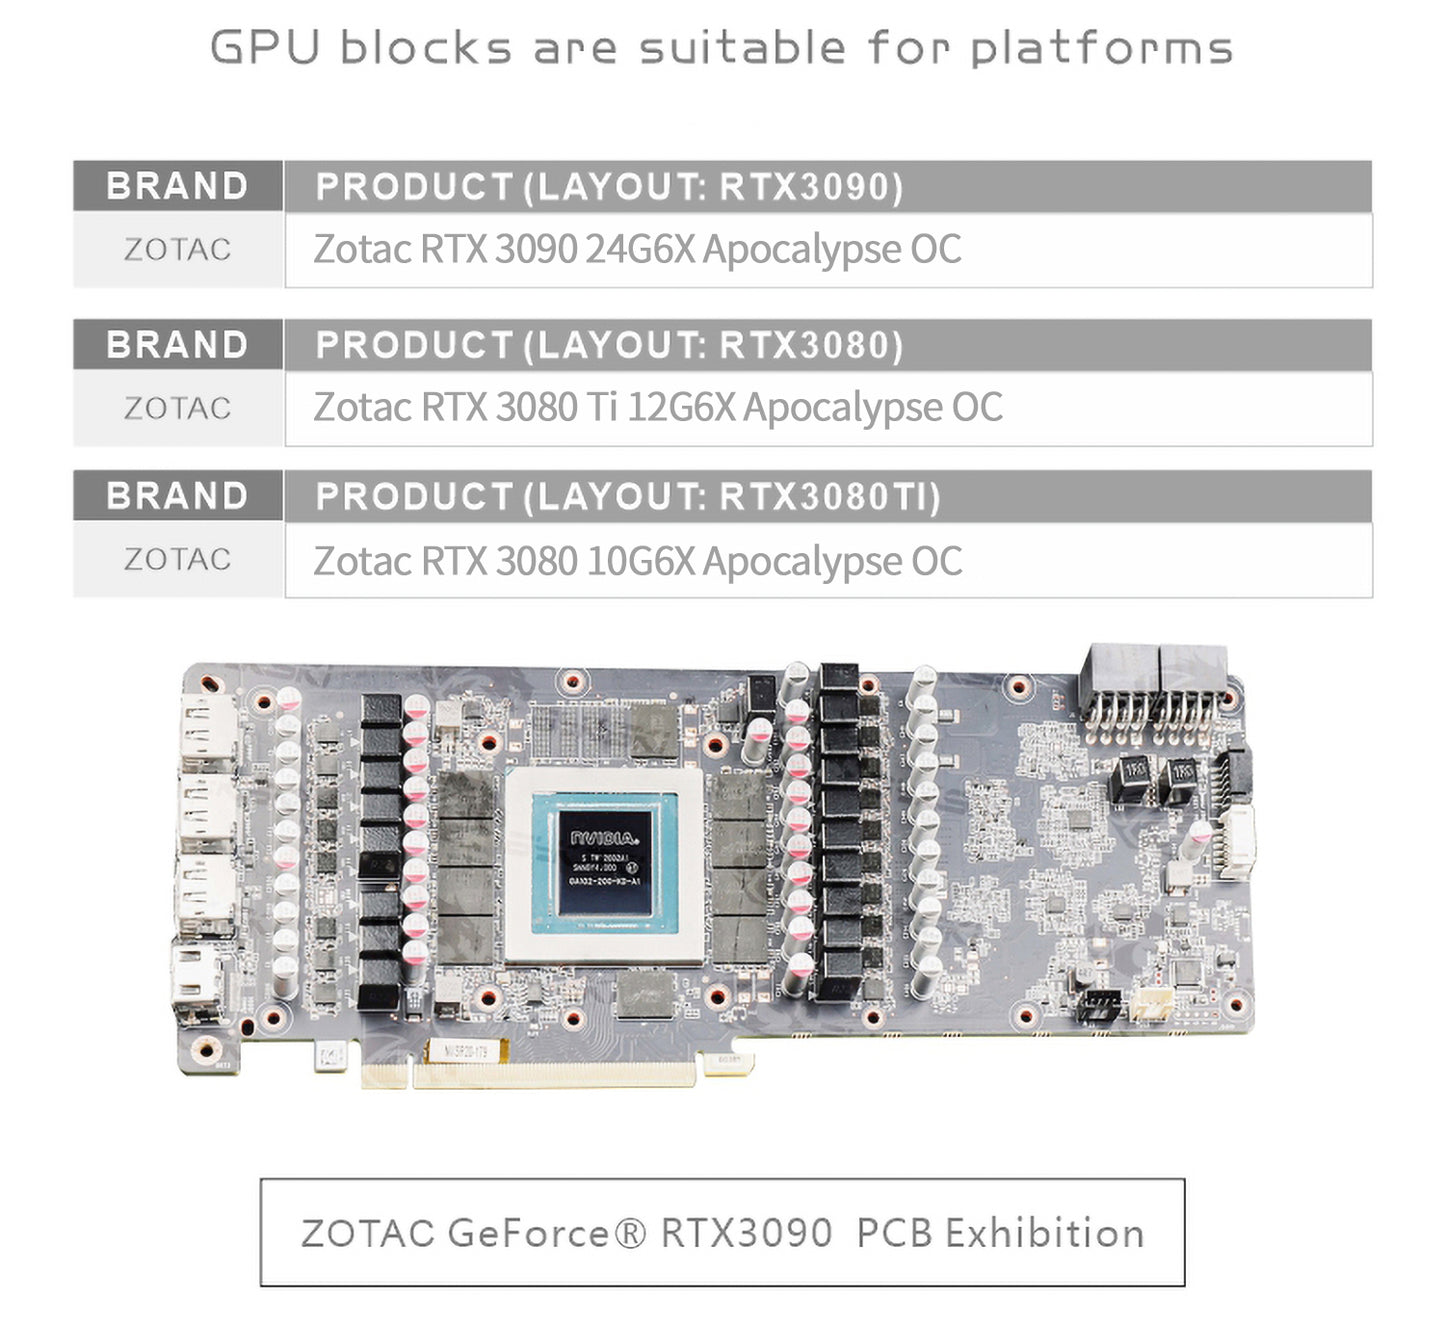 Bloc GPU Bykski avec refroidisseur de fond de panier de voie navigable actif pour ZOTAC RTX 3090 3080 G6X TianQi Apocalypse N-ST3090TQ-TC